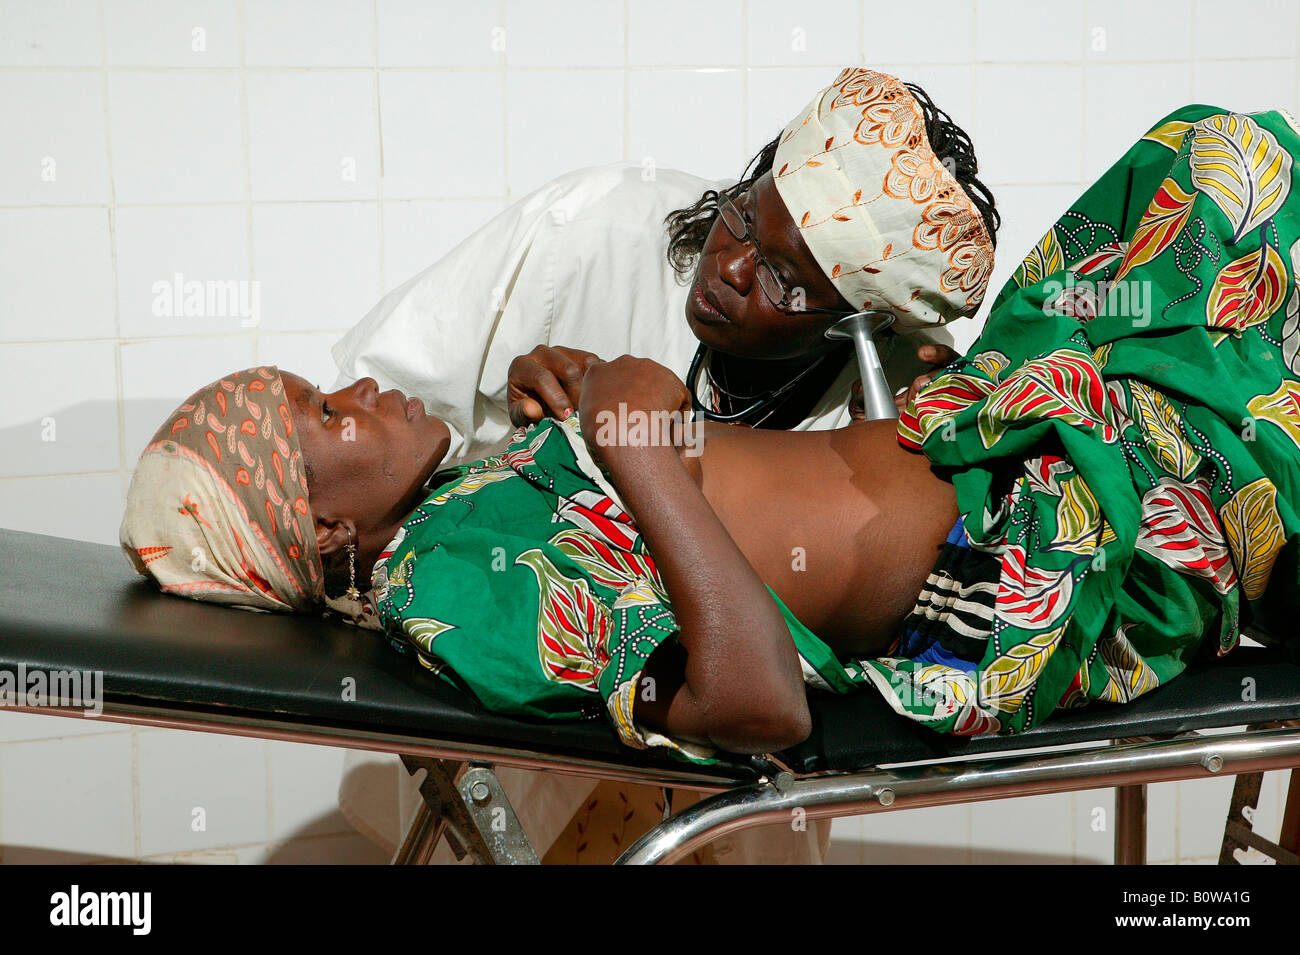 Medico donna esame di una donna, i test prenatali, Garoua, Camerun, Africa Foto Stock